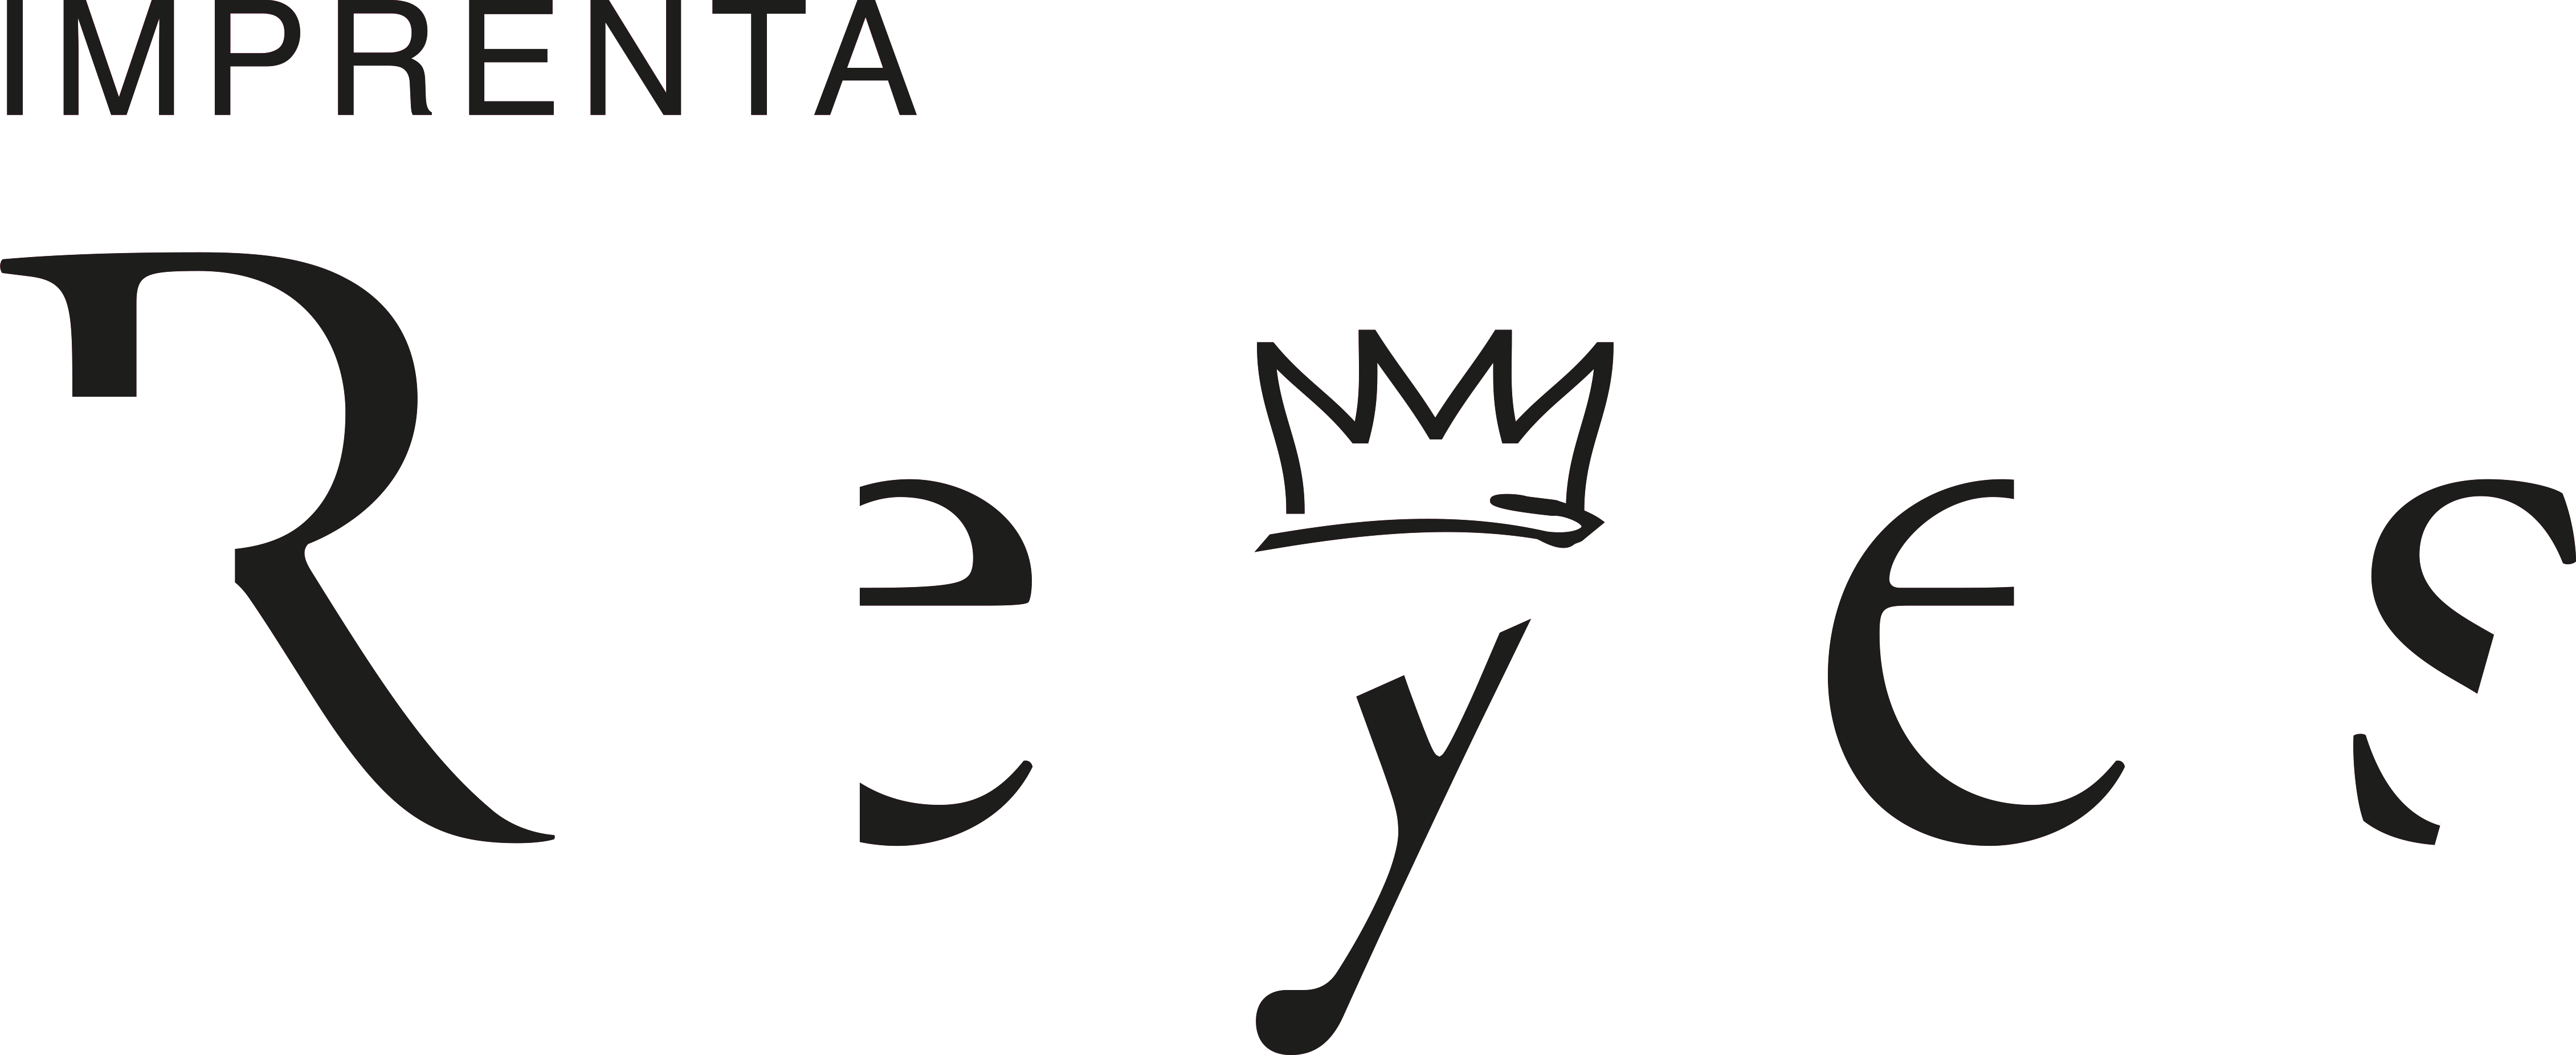 Joyda SL Logo nuevo